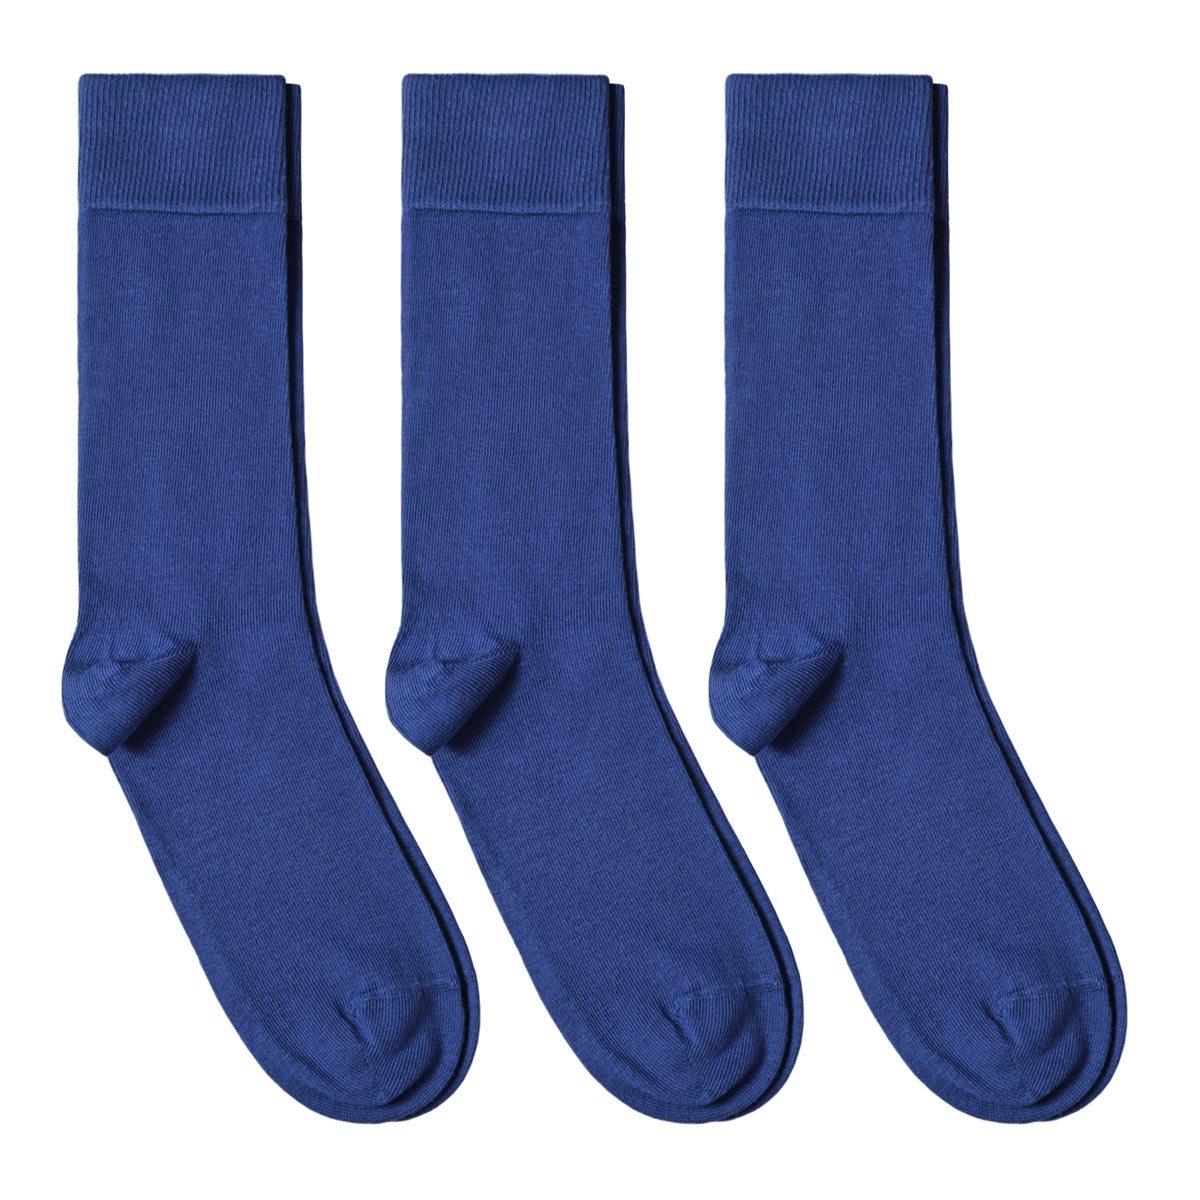 CH-00577_A12-1--_Lot-3-paires-de-chaussettes-homme-bleues-royales-unies